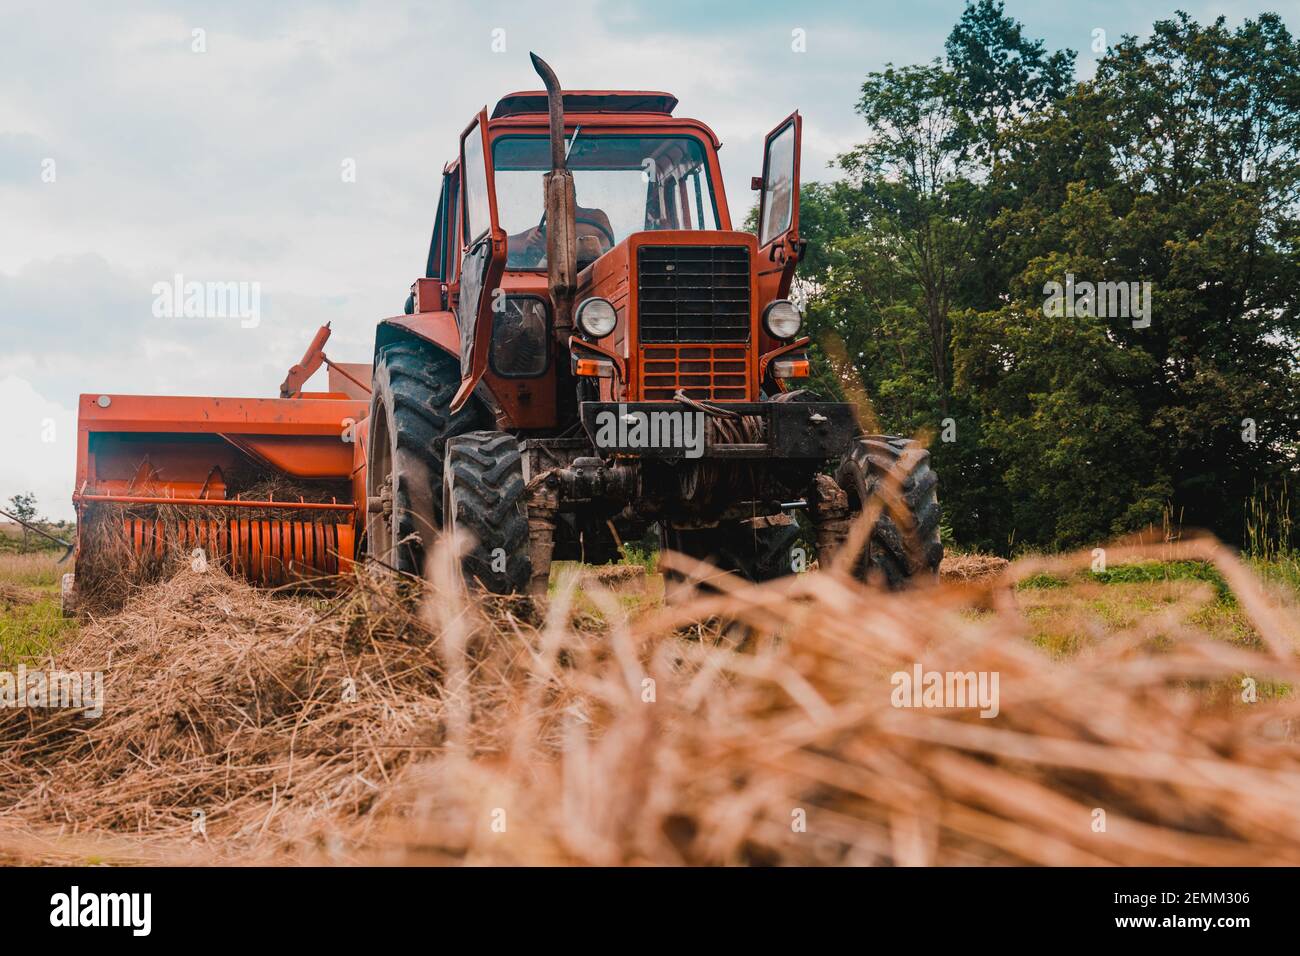 Vieux tracteur rouge dans le champ, champs ukrainiens et machines anciennes, récolte de foin dans le champ.2021 Banque D'Images